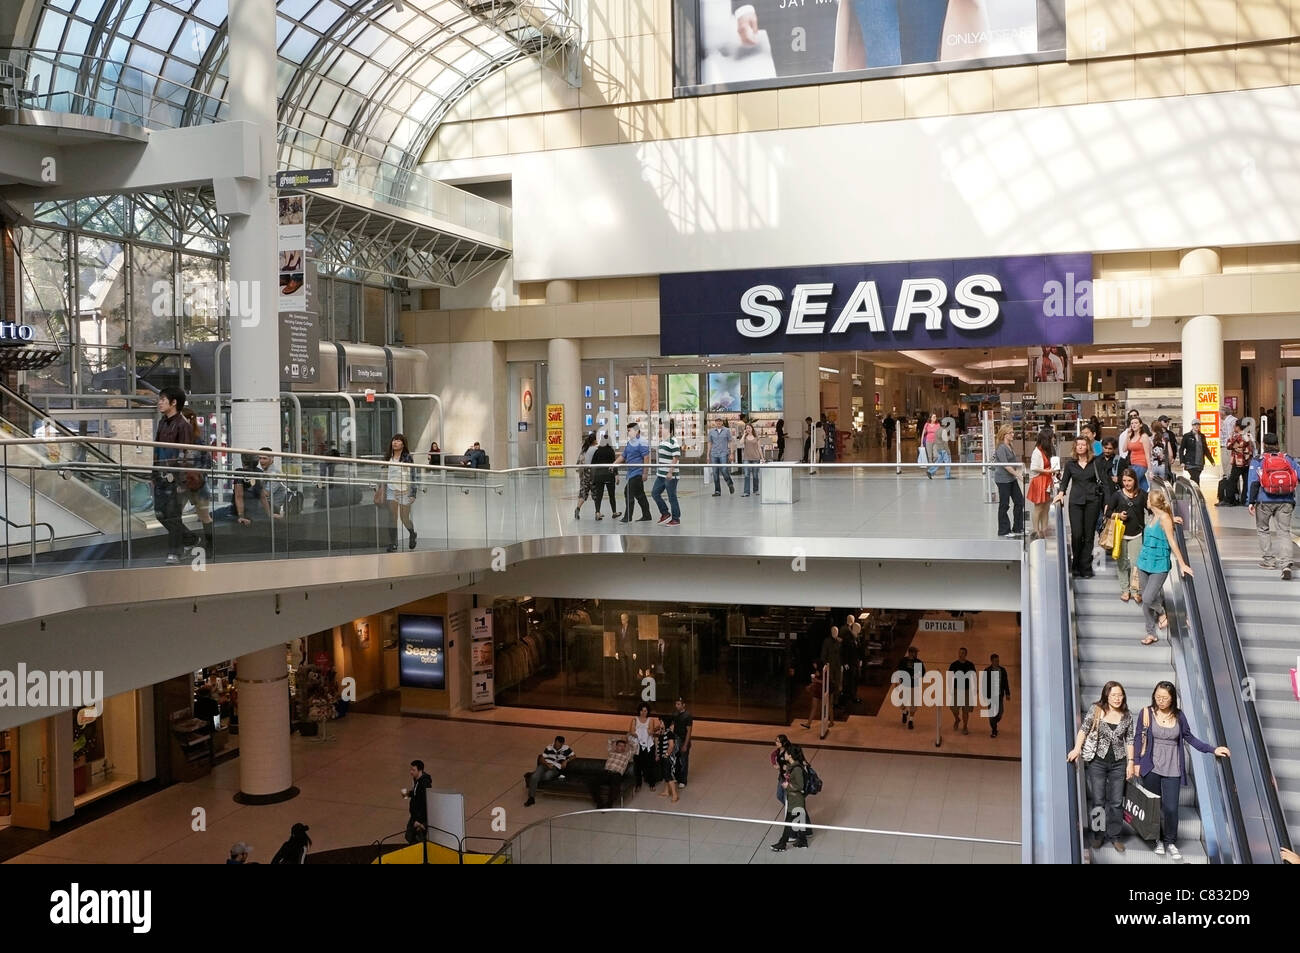 Persone su scale mobili nel Centro Commerciale per lo Shopping e Sears department store in ingresso, Toronto Eaton Centre Foto Stock